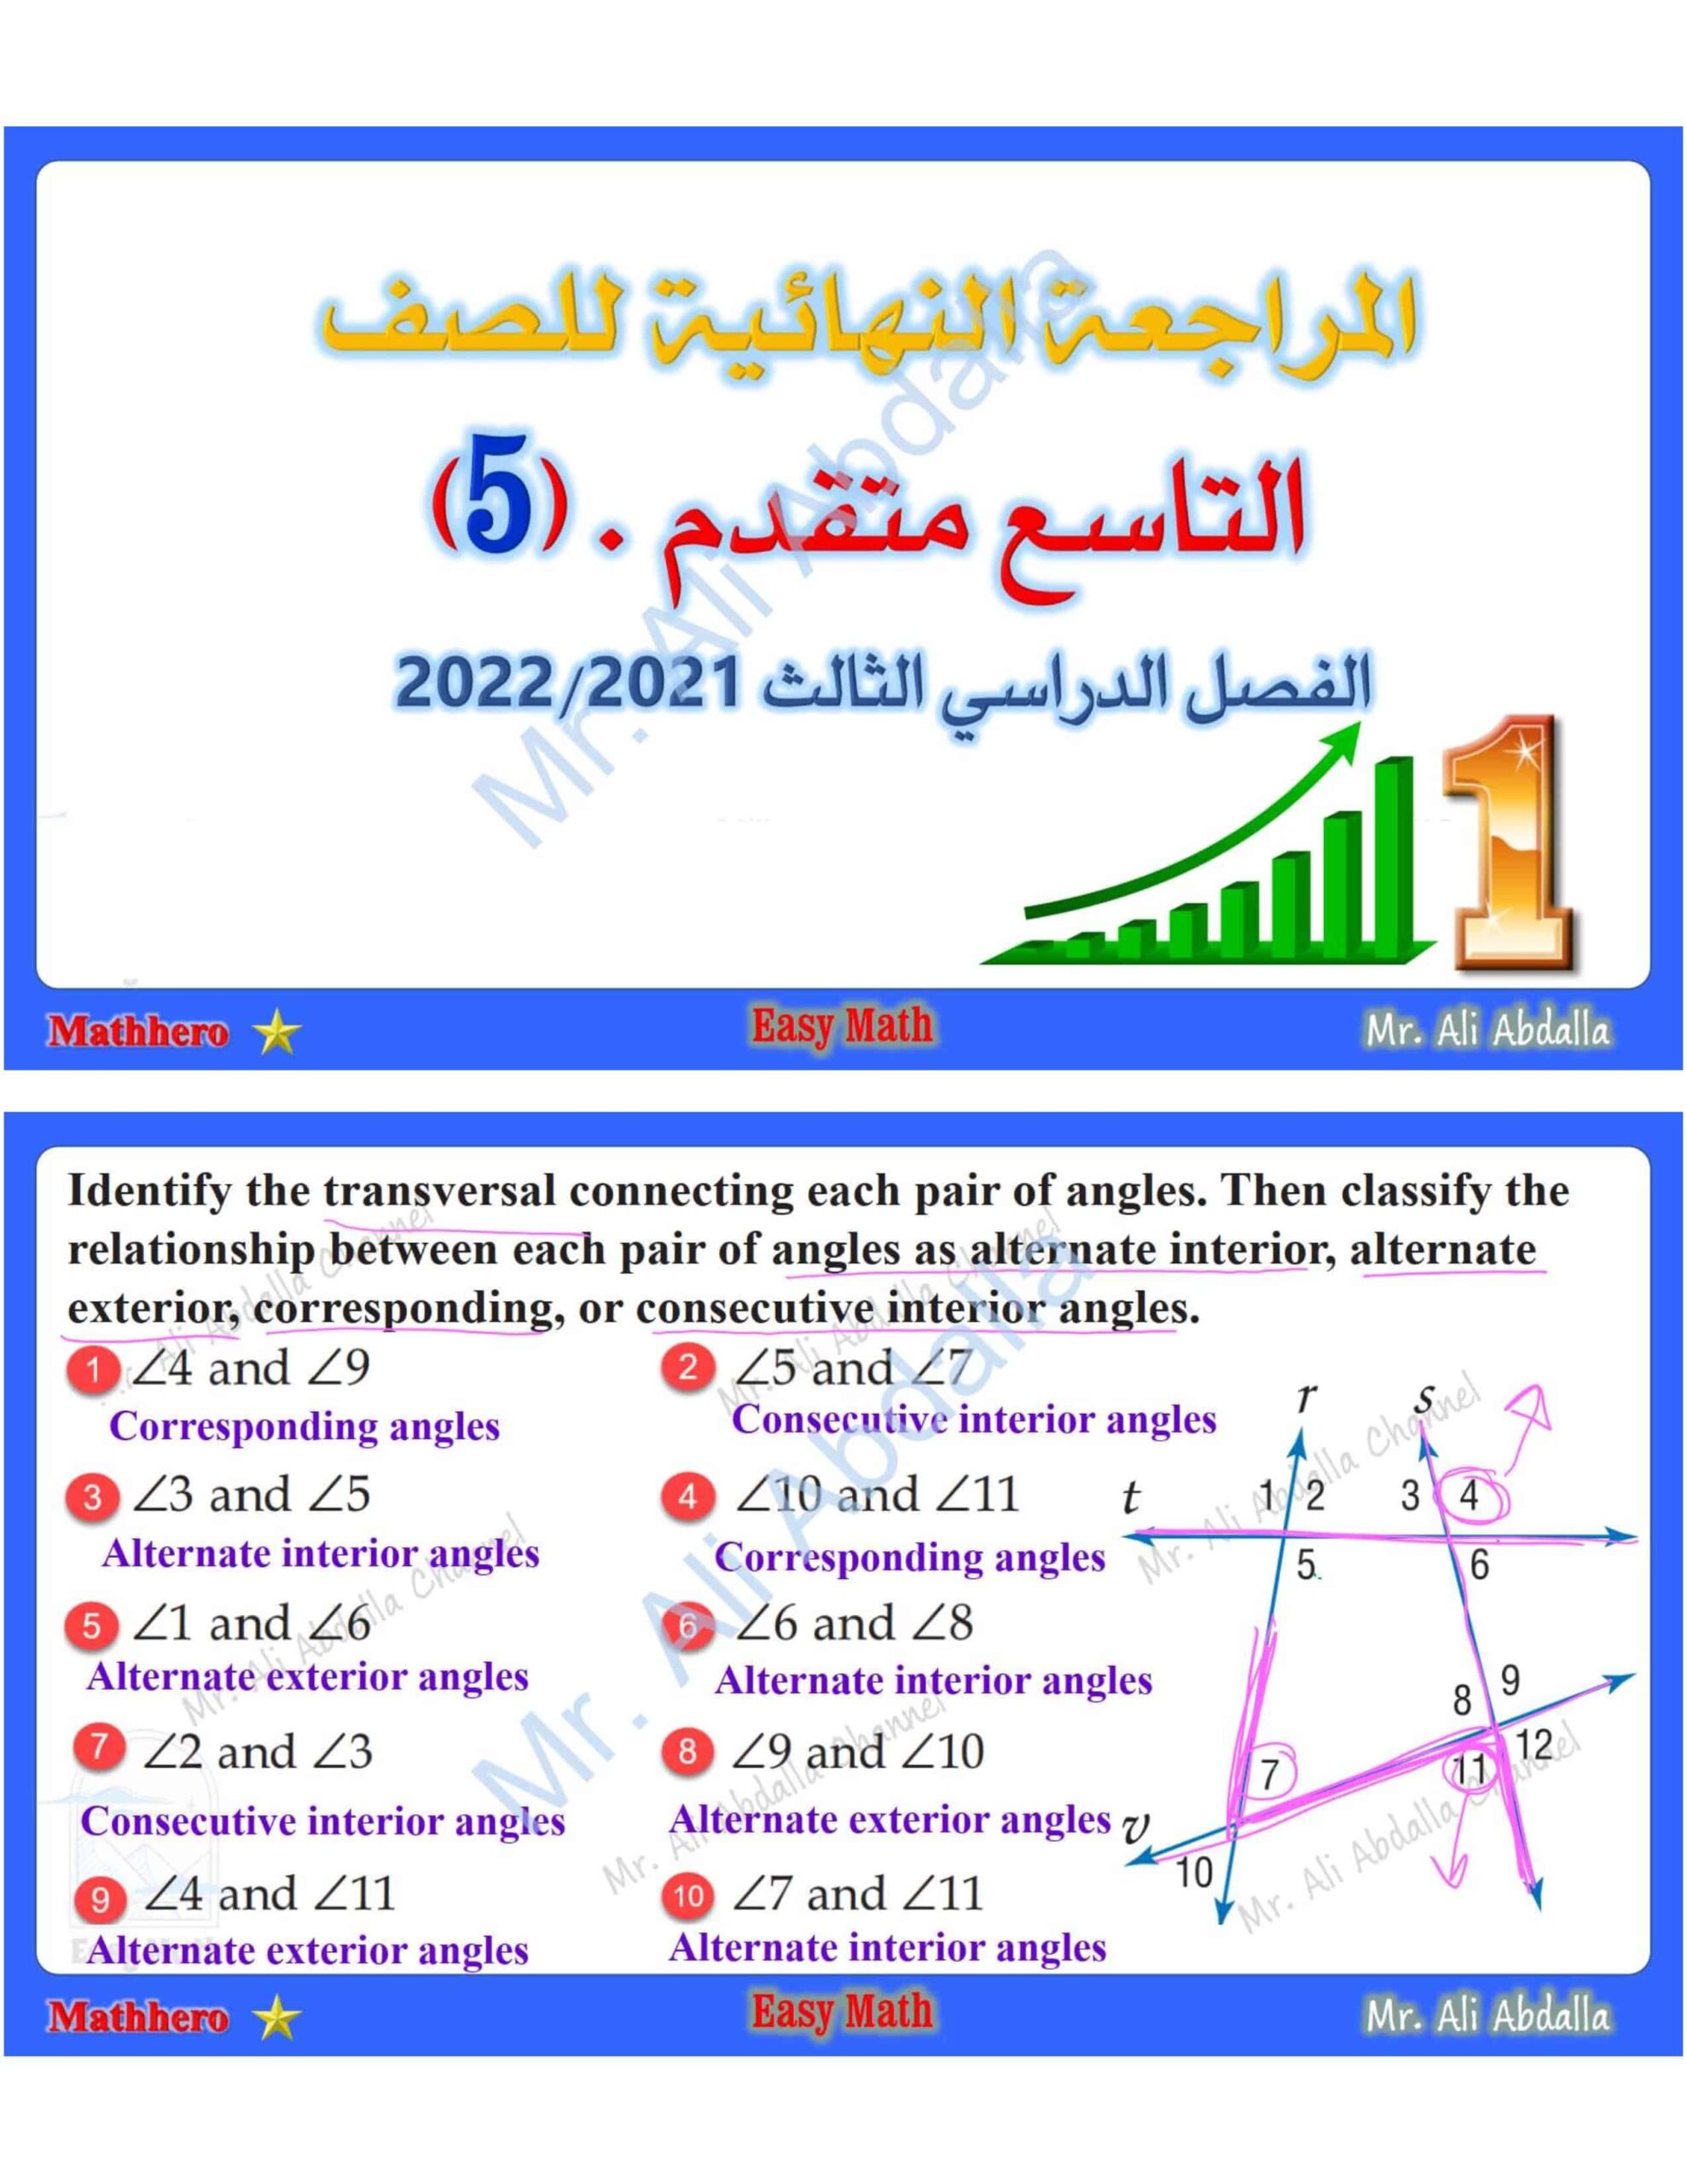 حل أوراق عمل المراجعة النهائية الرياضيات المتكاملة الصف التاسع متقدم